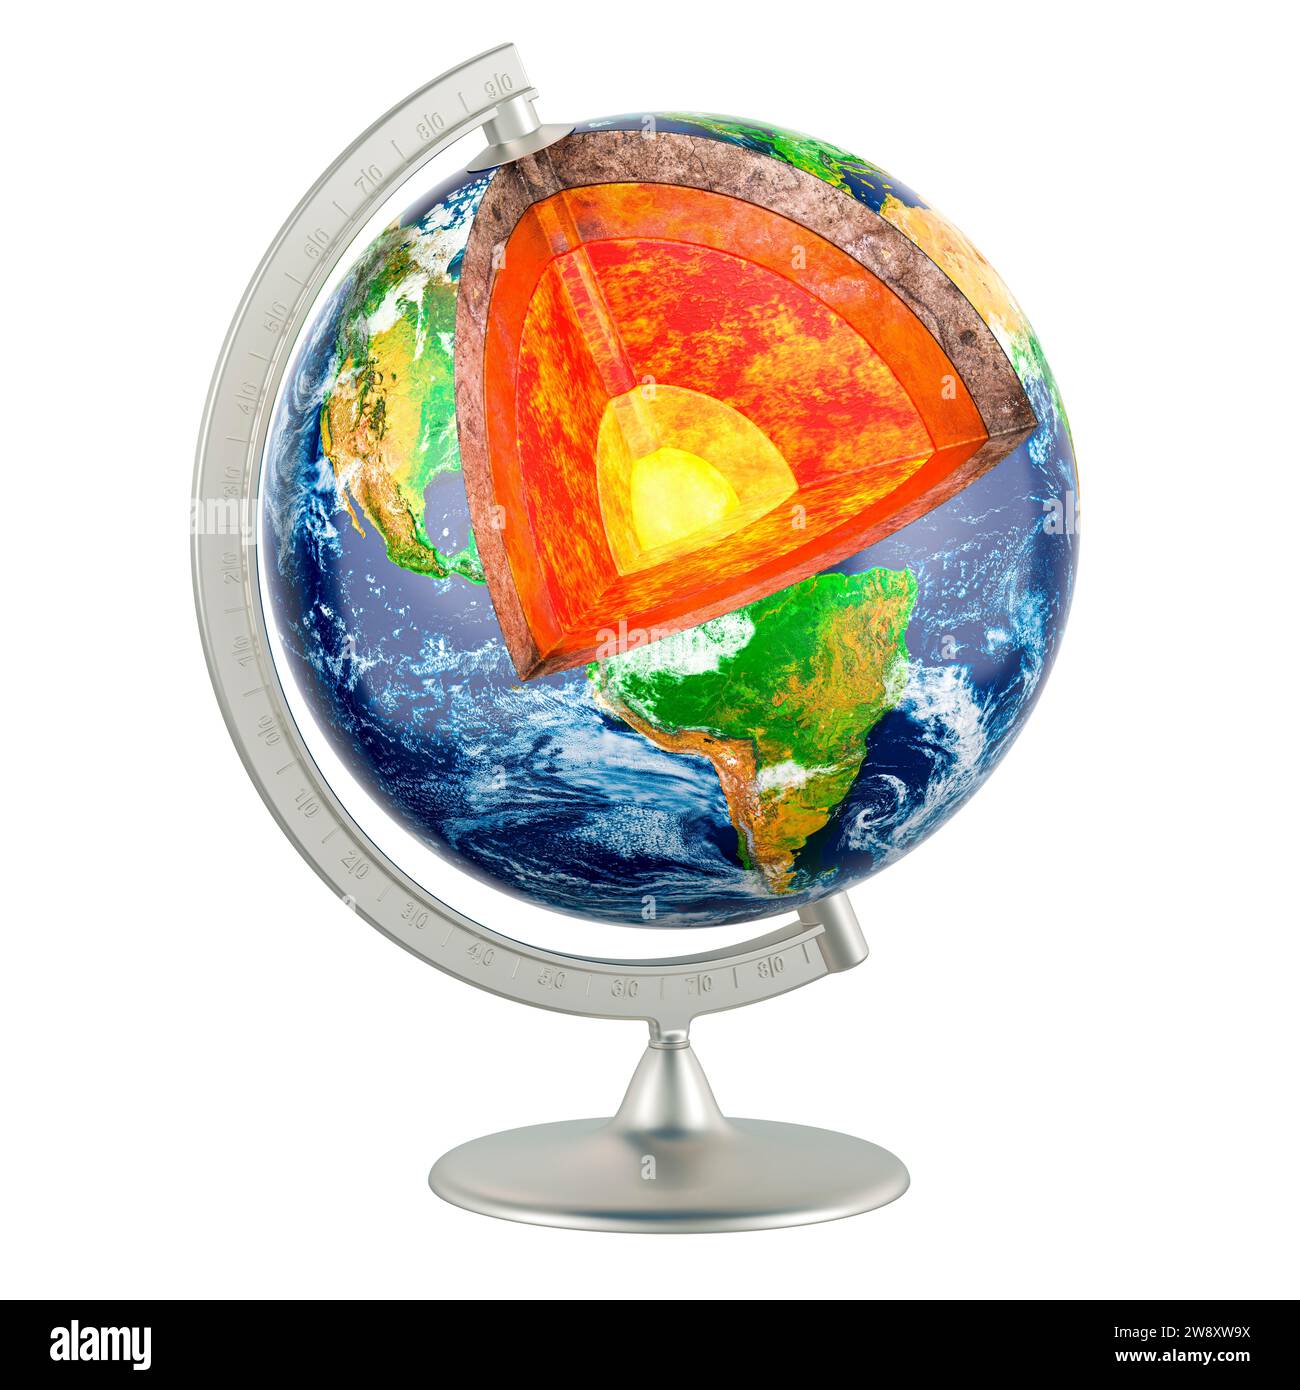 Modello di terra in sezione trasversale. Struttura dettagliata del concetto del pianeta terrestre, rendering 3D isolato su sfondo bianco Foto Stock